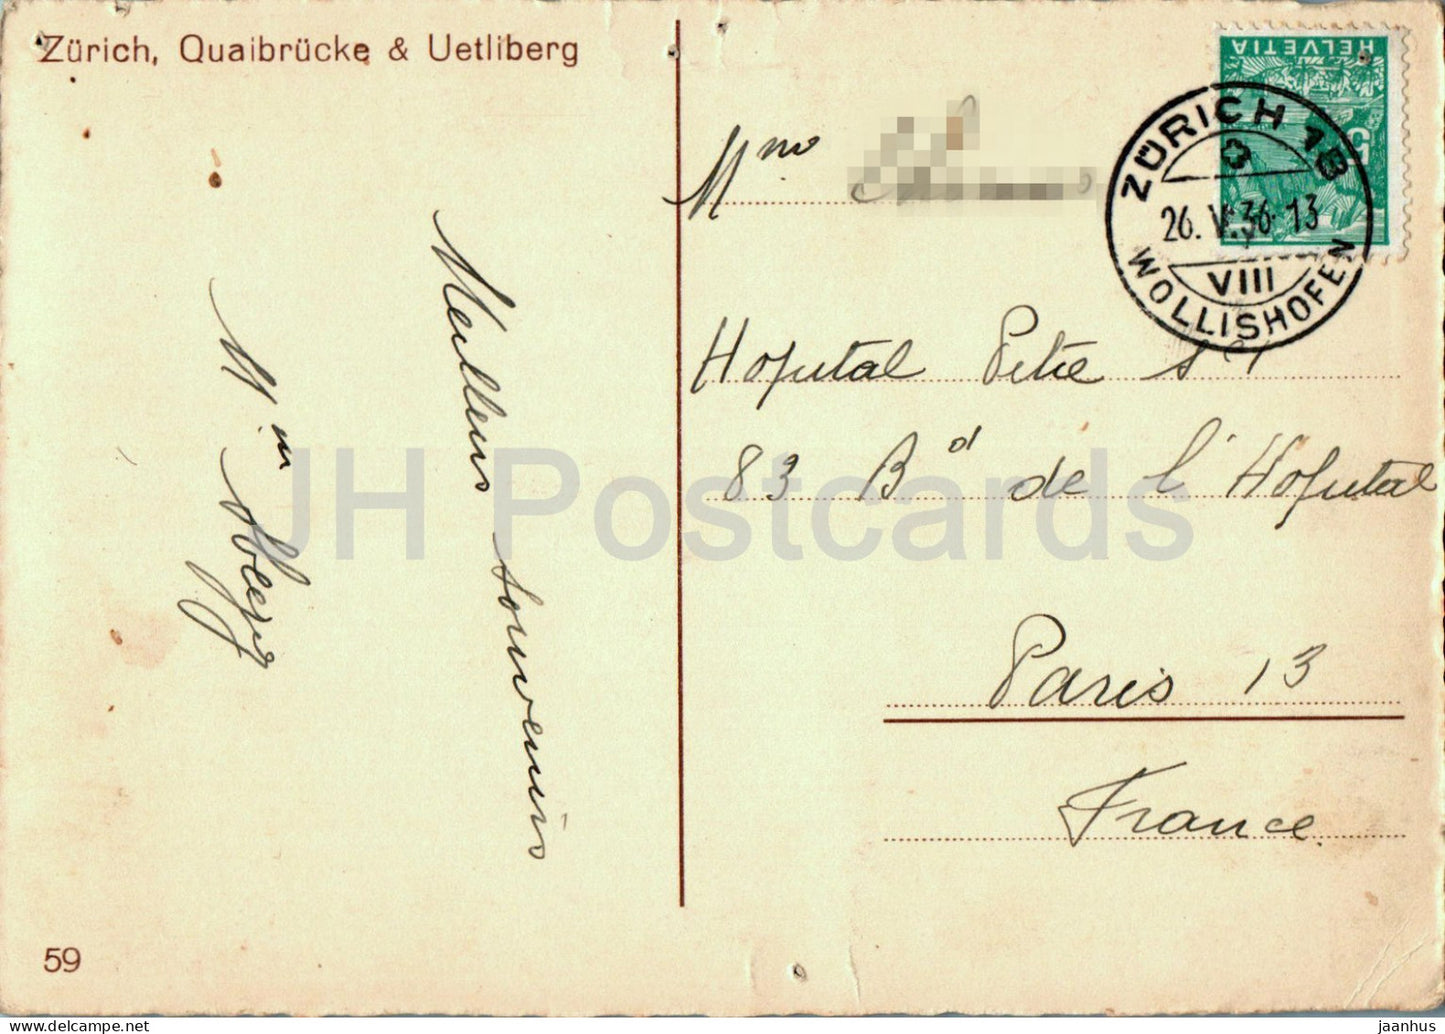 Zurich - Quaibrucke - Uetliberg - tram - bridge - old postcard - 59 - 1936 - Switzerland - used